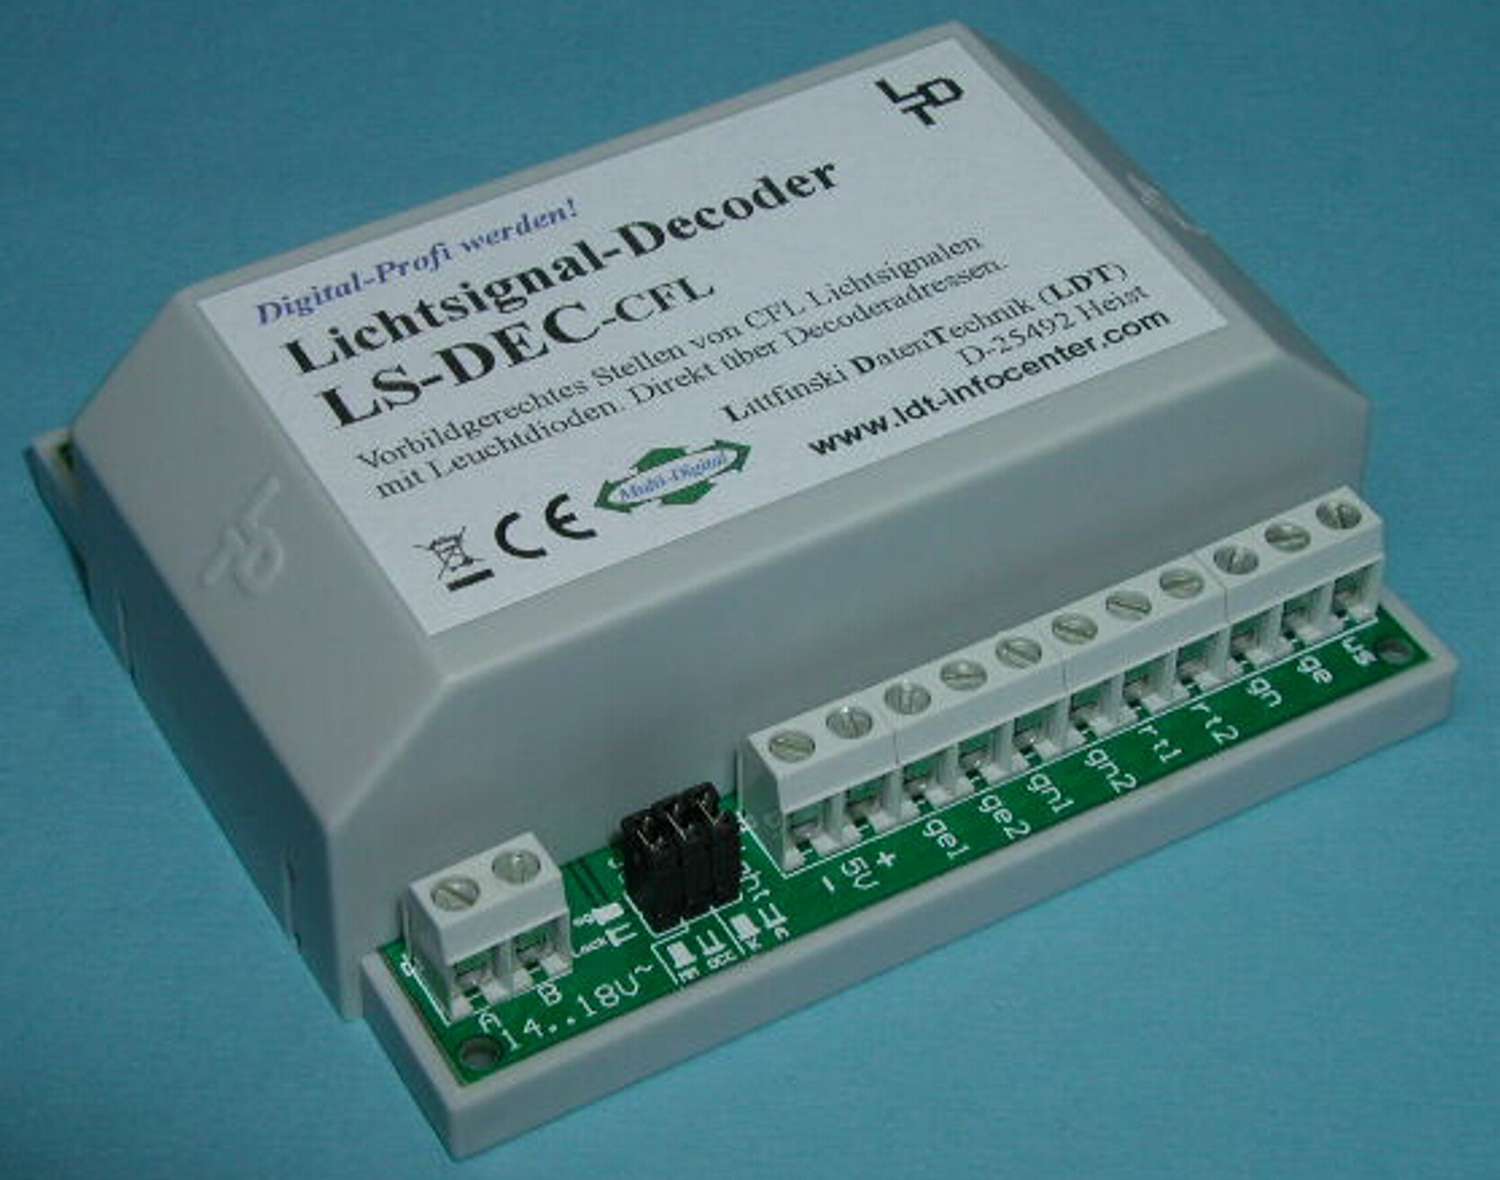 Littfinski 514012 - LS-DEC-CFL-F - Lichtsignaldecoder, 4-fach, für CFL-Signale, Fertigmodul